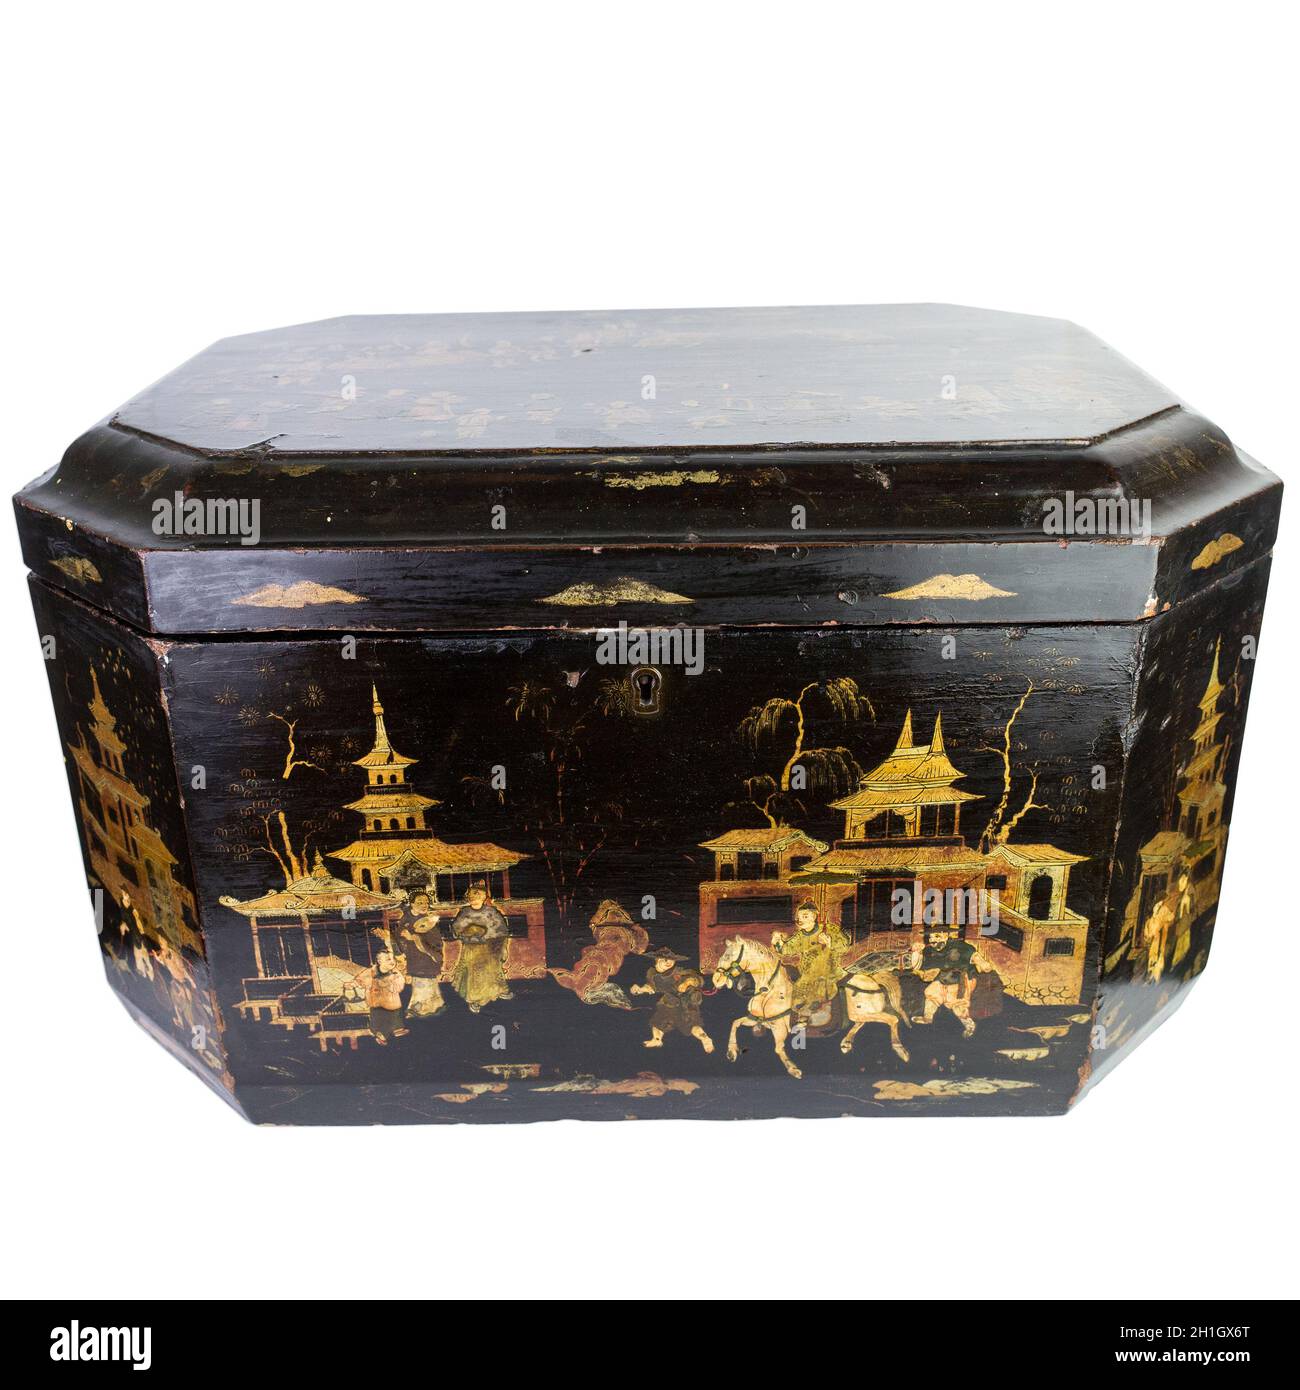 Boîte de rangement pour laque d'exportation de Chine antique.Boîte à couture en laque noir chinois avec scènes peintes à la main.19e siècle Banque D'Images